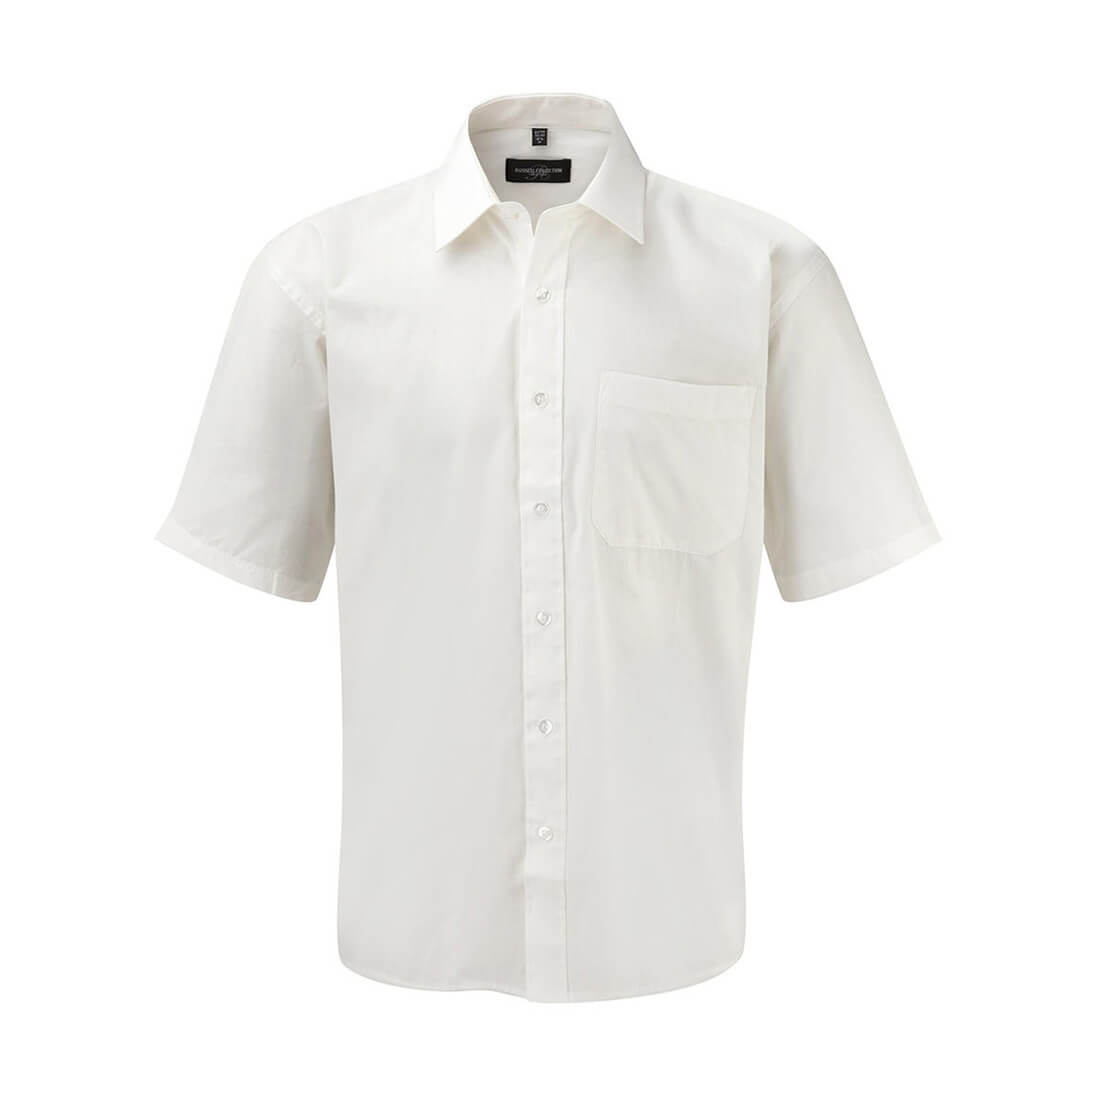 Camicia Popeline puro cotone maniche corte - Abbigliamento di protezione